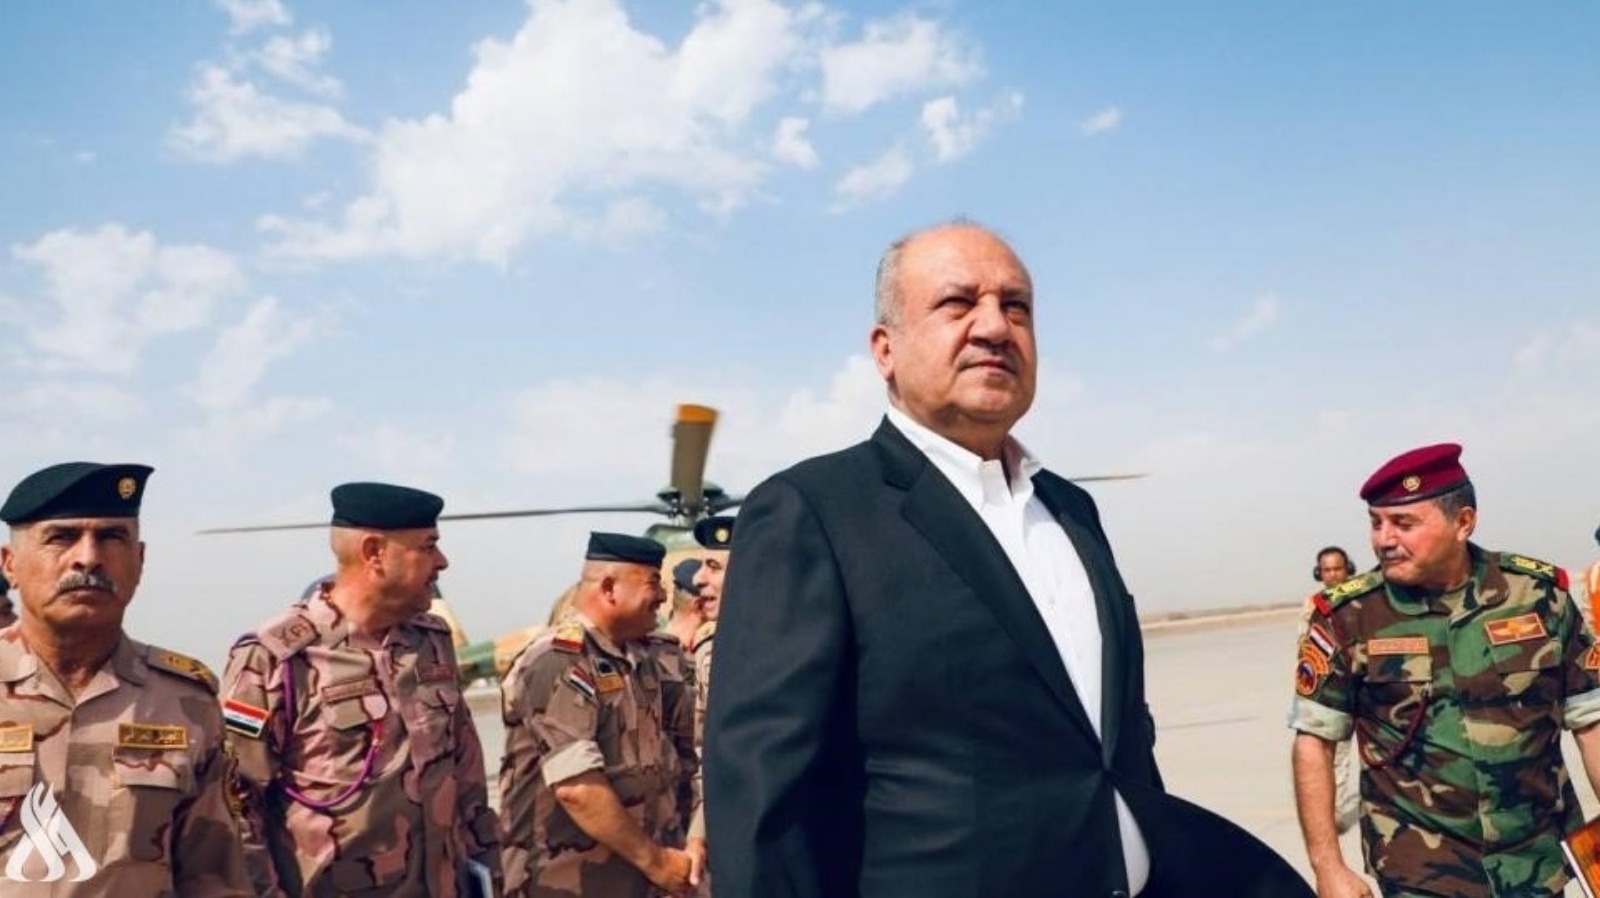 وزير الدفاع العراقي ثابت العباسي لدى وصوله الى قاعدة عين الاسد بمحافظة الانبار العراقية للاطلاع على الإجراءات الأمنية وحمايتها من صواريخ ومسيرات المليشيات العراقية (تويتر)